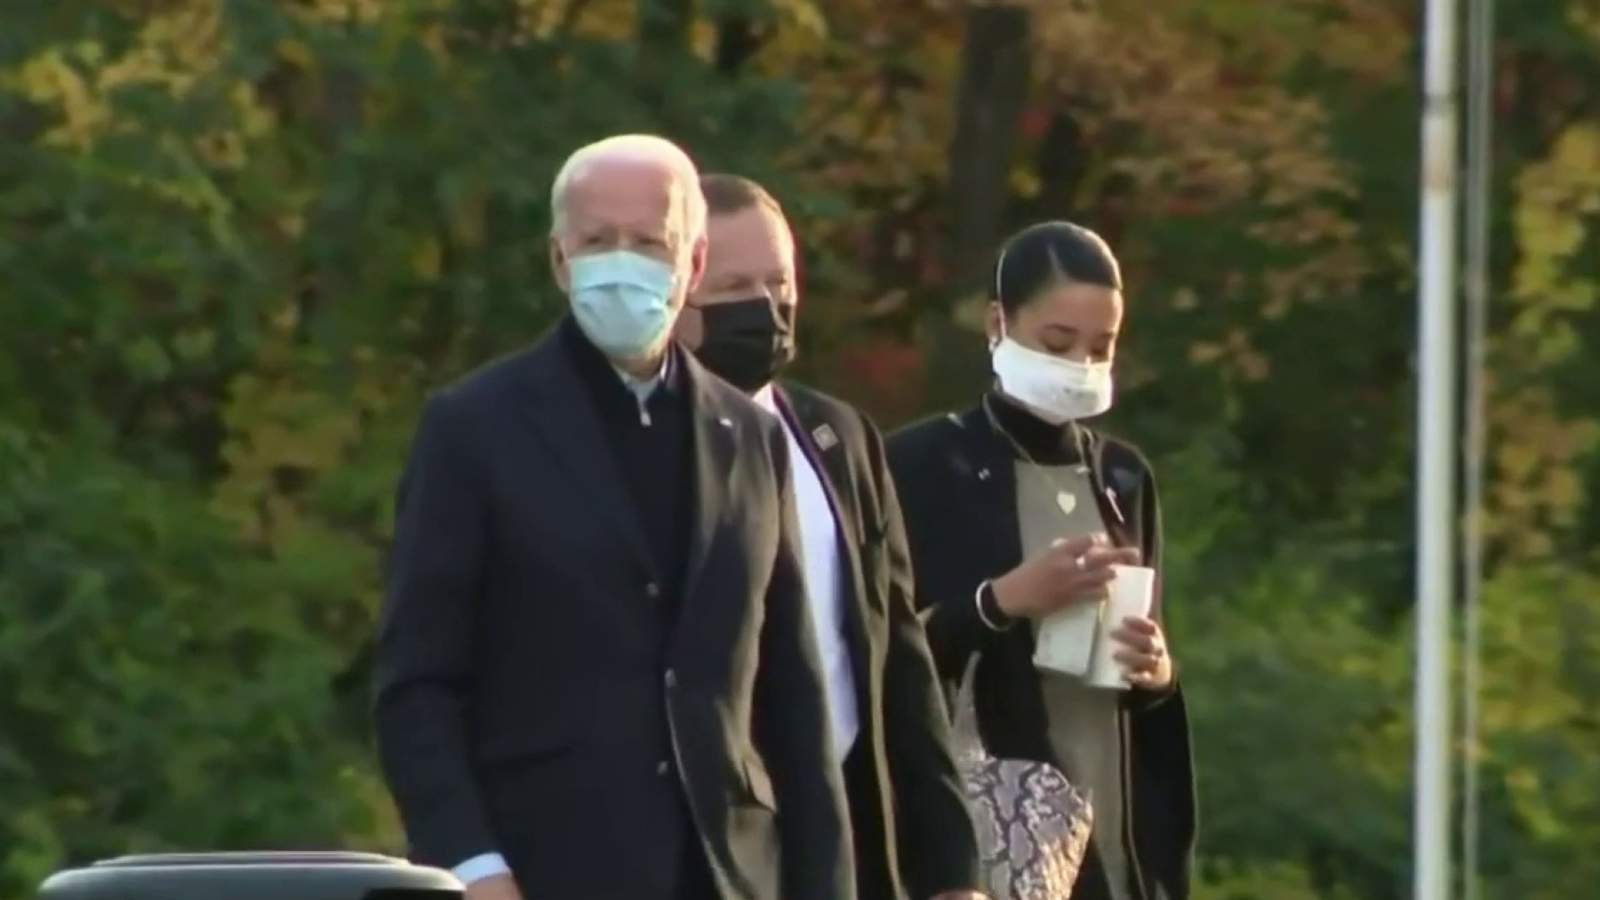 Joe Biden discusses blue collar workers, handling coronavirus